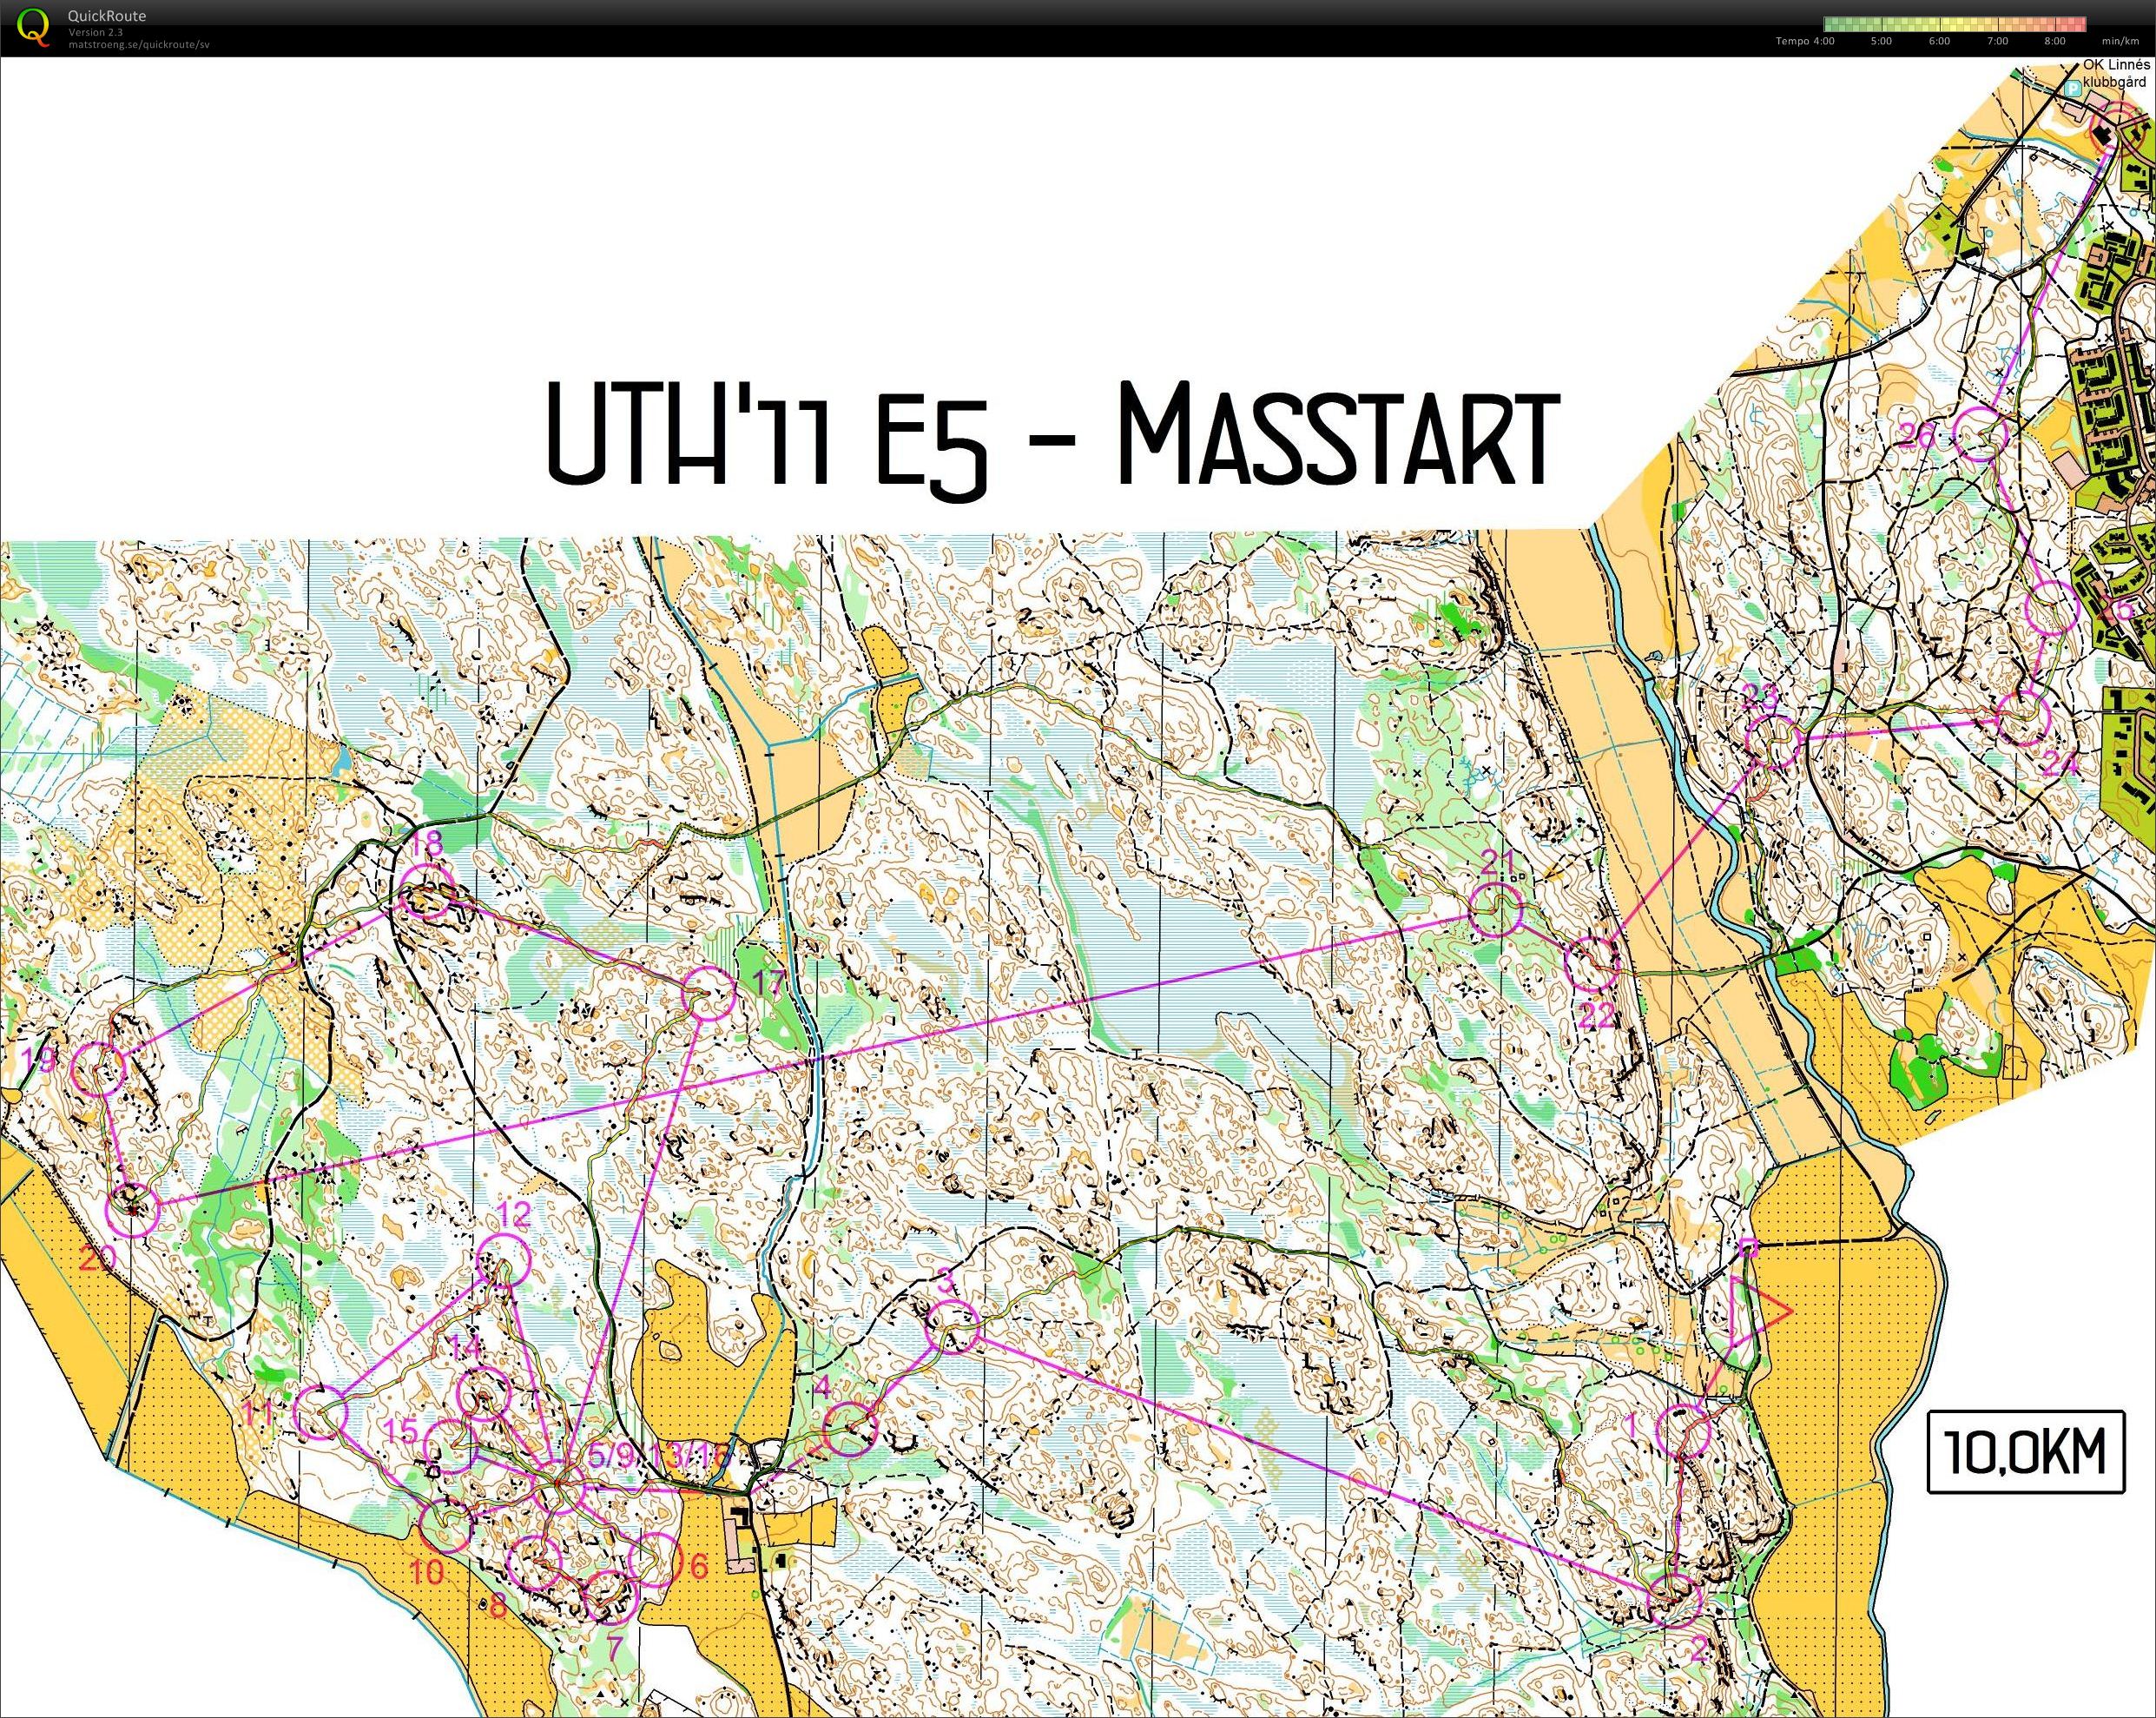 UTH E5 Masstart (11-12-2011)